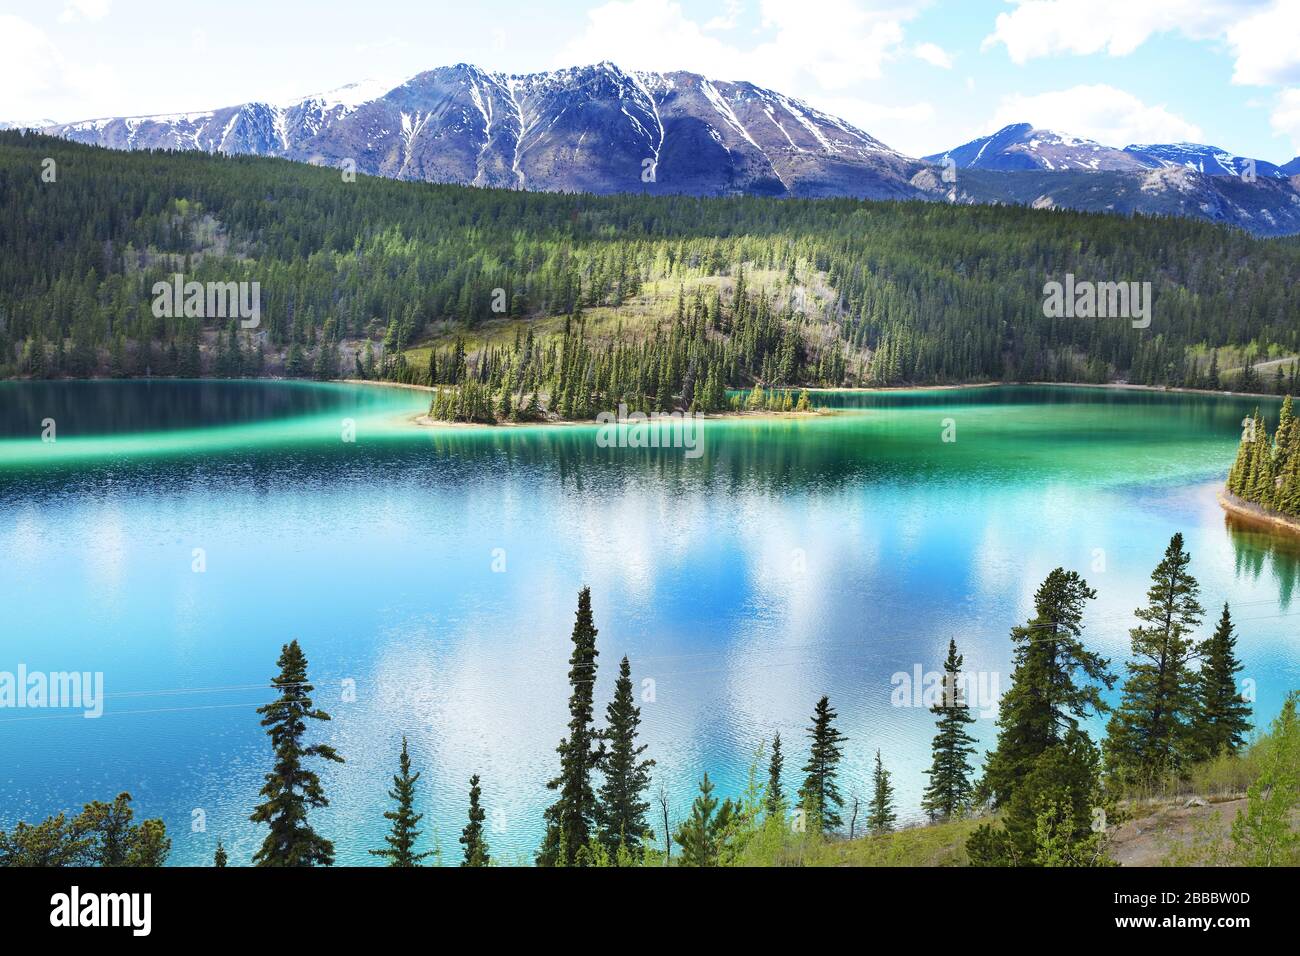 Emerald Lake es así llamado debido a la coloración verde de su agua que resulta de una mezcla de arcilla y carbonato de calcio en el fondo poco profundo. 12 km al norte de Carcross, Territorio del Yukón, Canadá Foto de stock